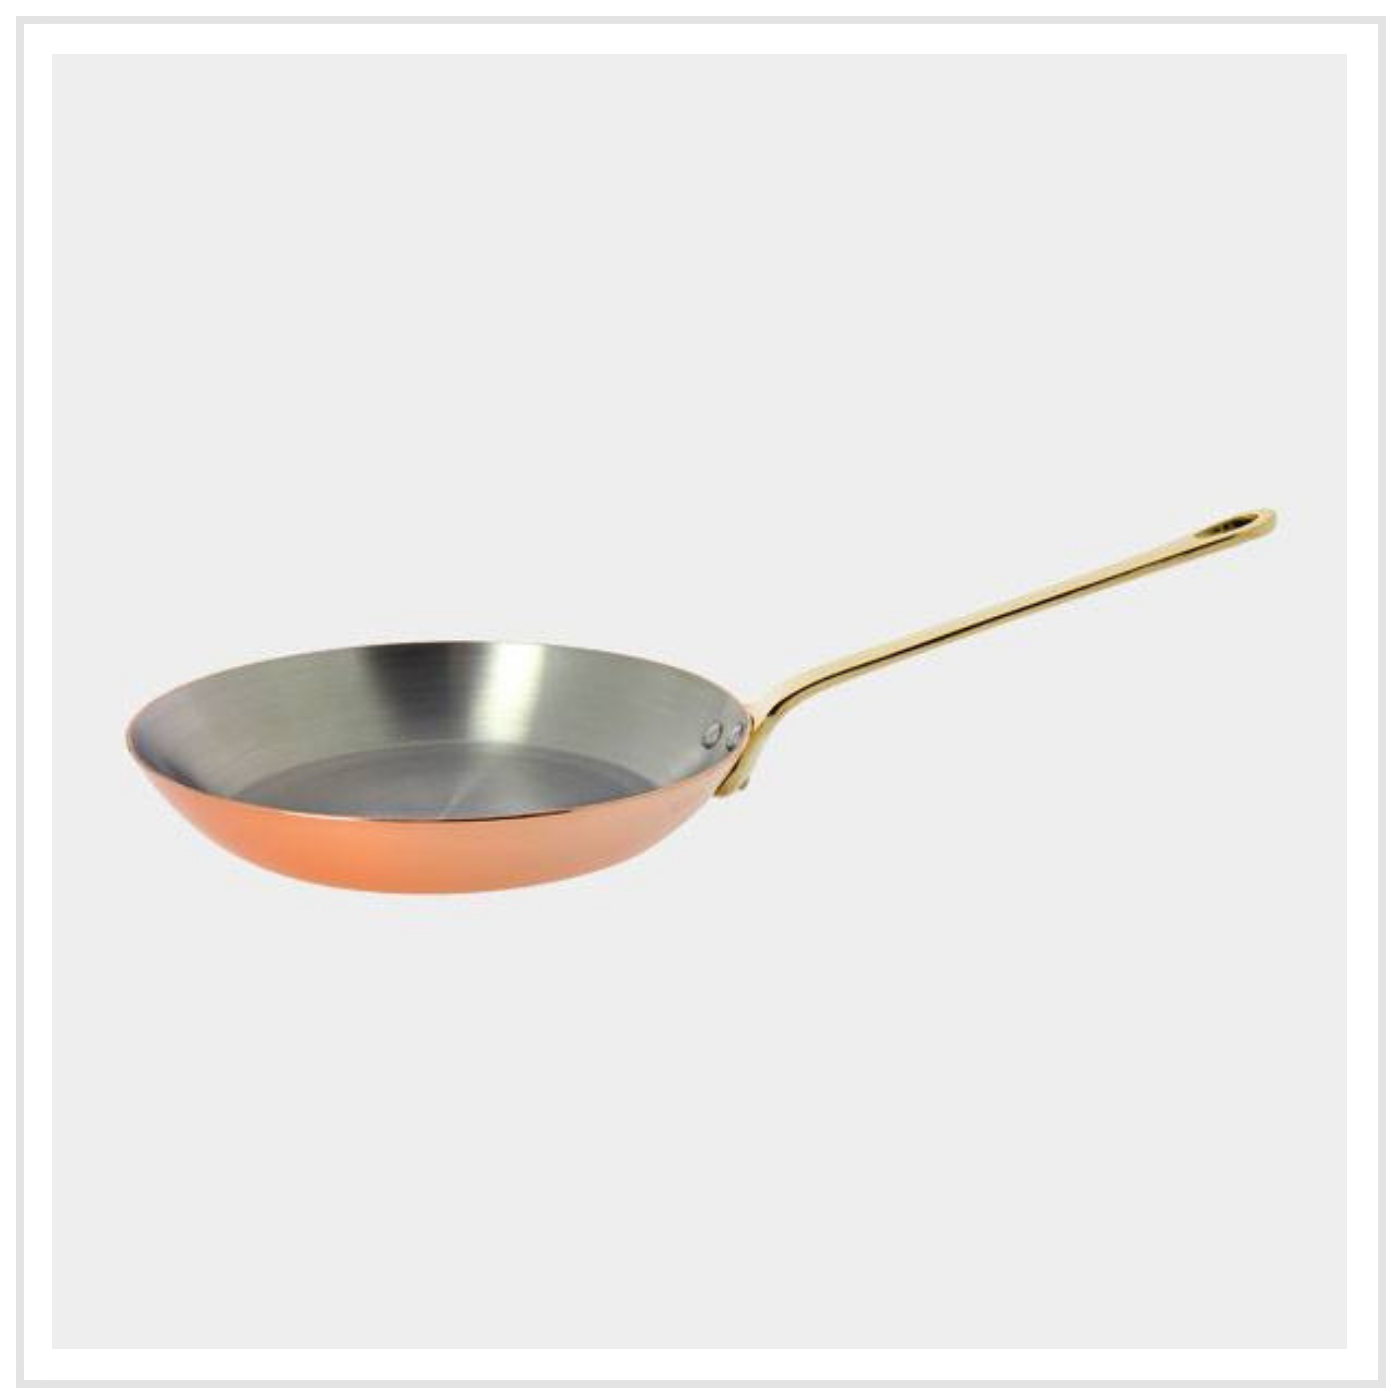 De Buyer Copper Frying Pan with Bronze Handle - 20cm